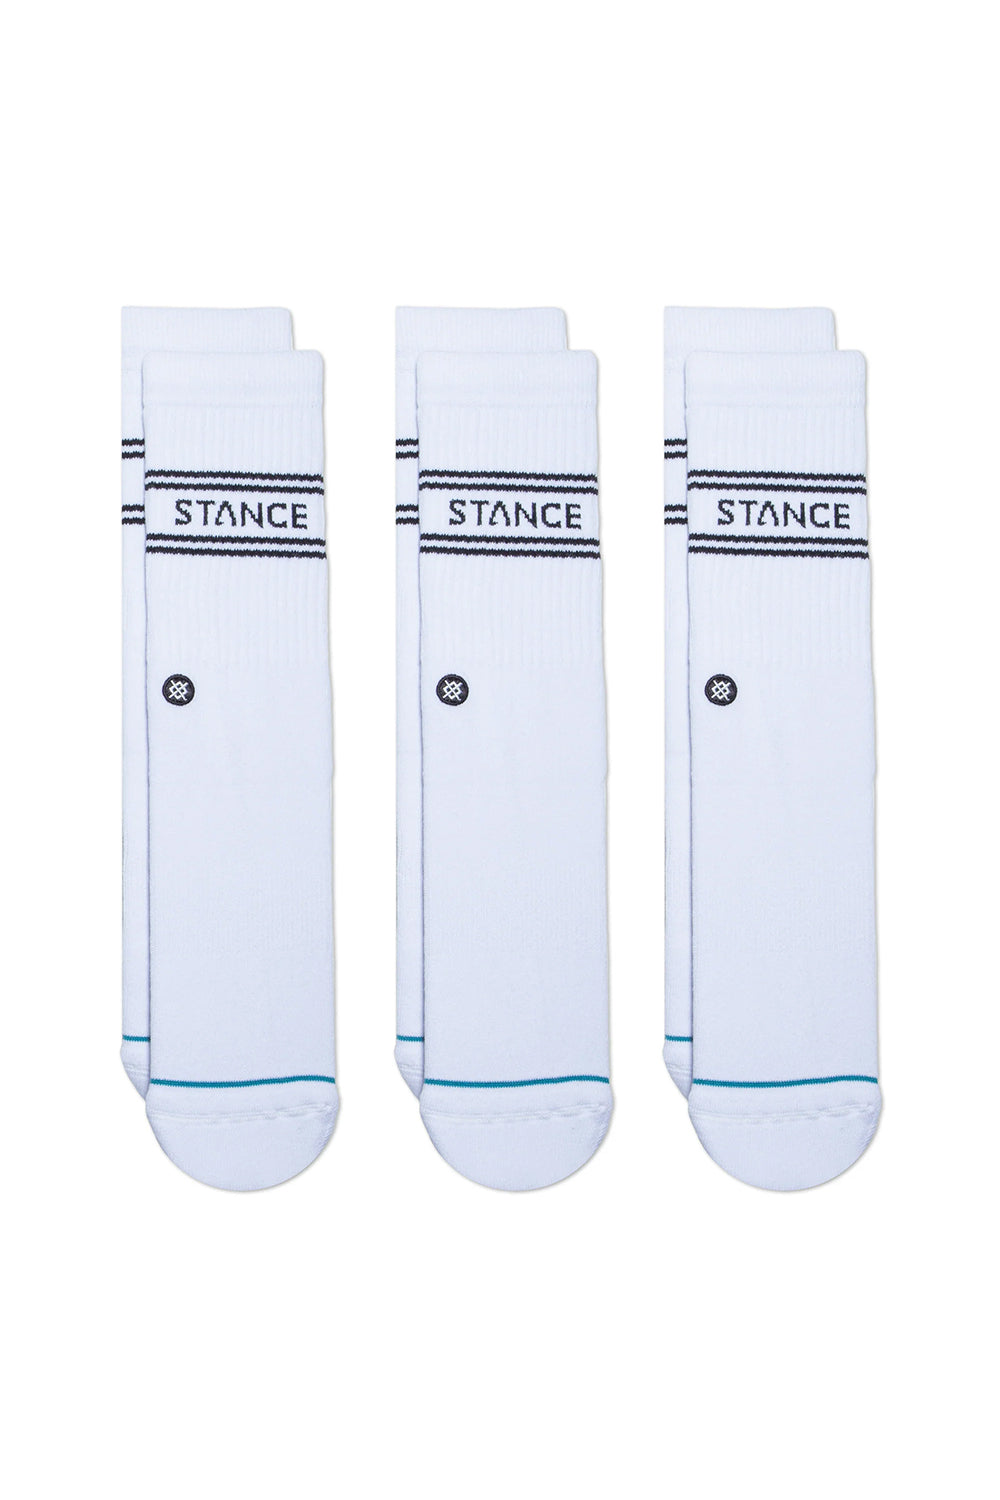 Stance Mens Basic 3 Pack Crew Socks